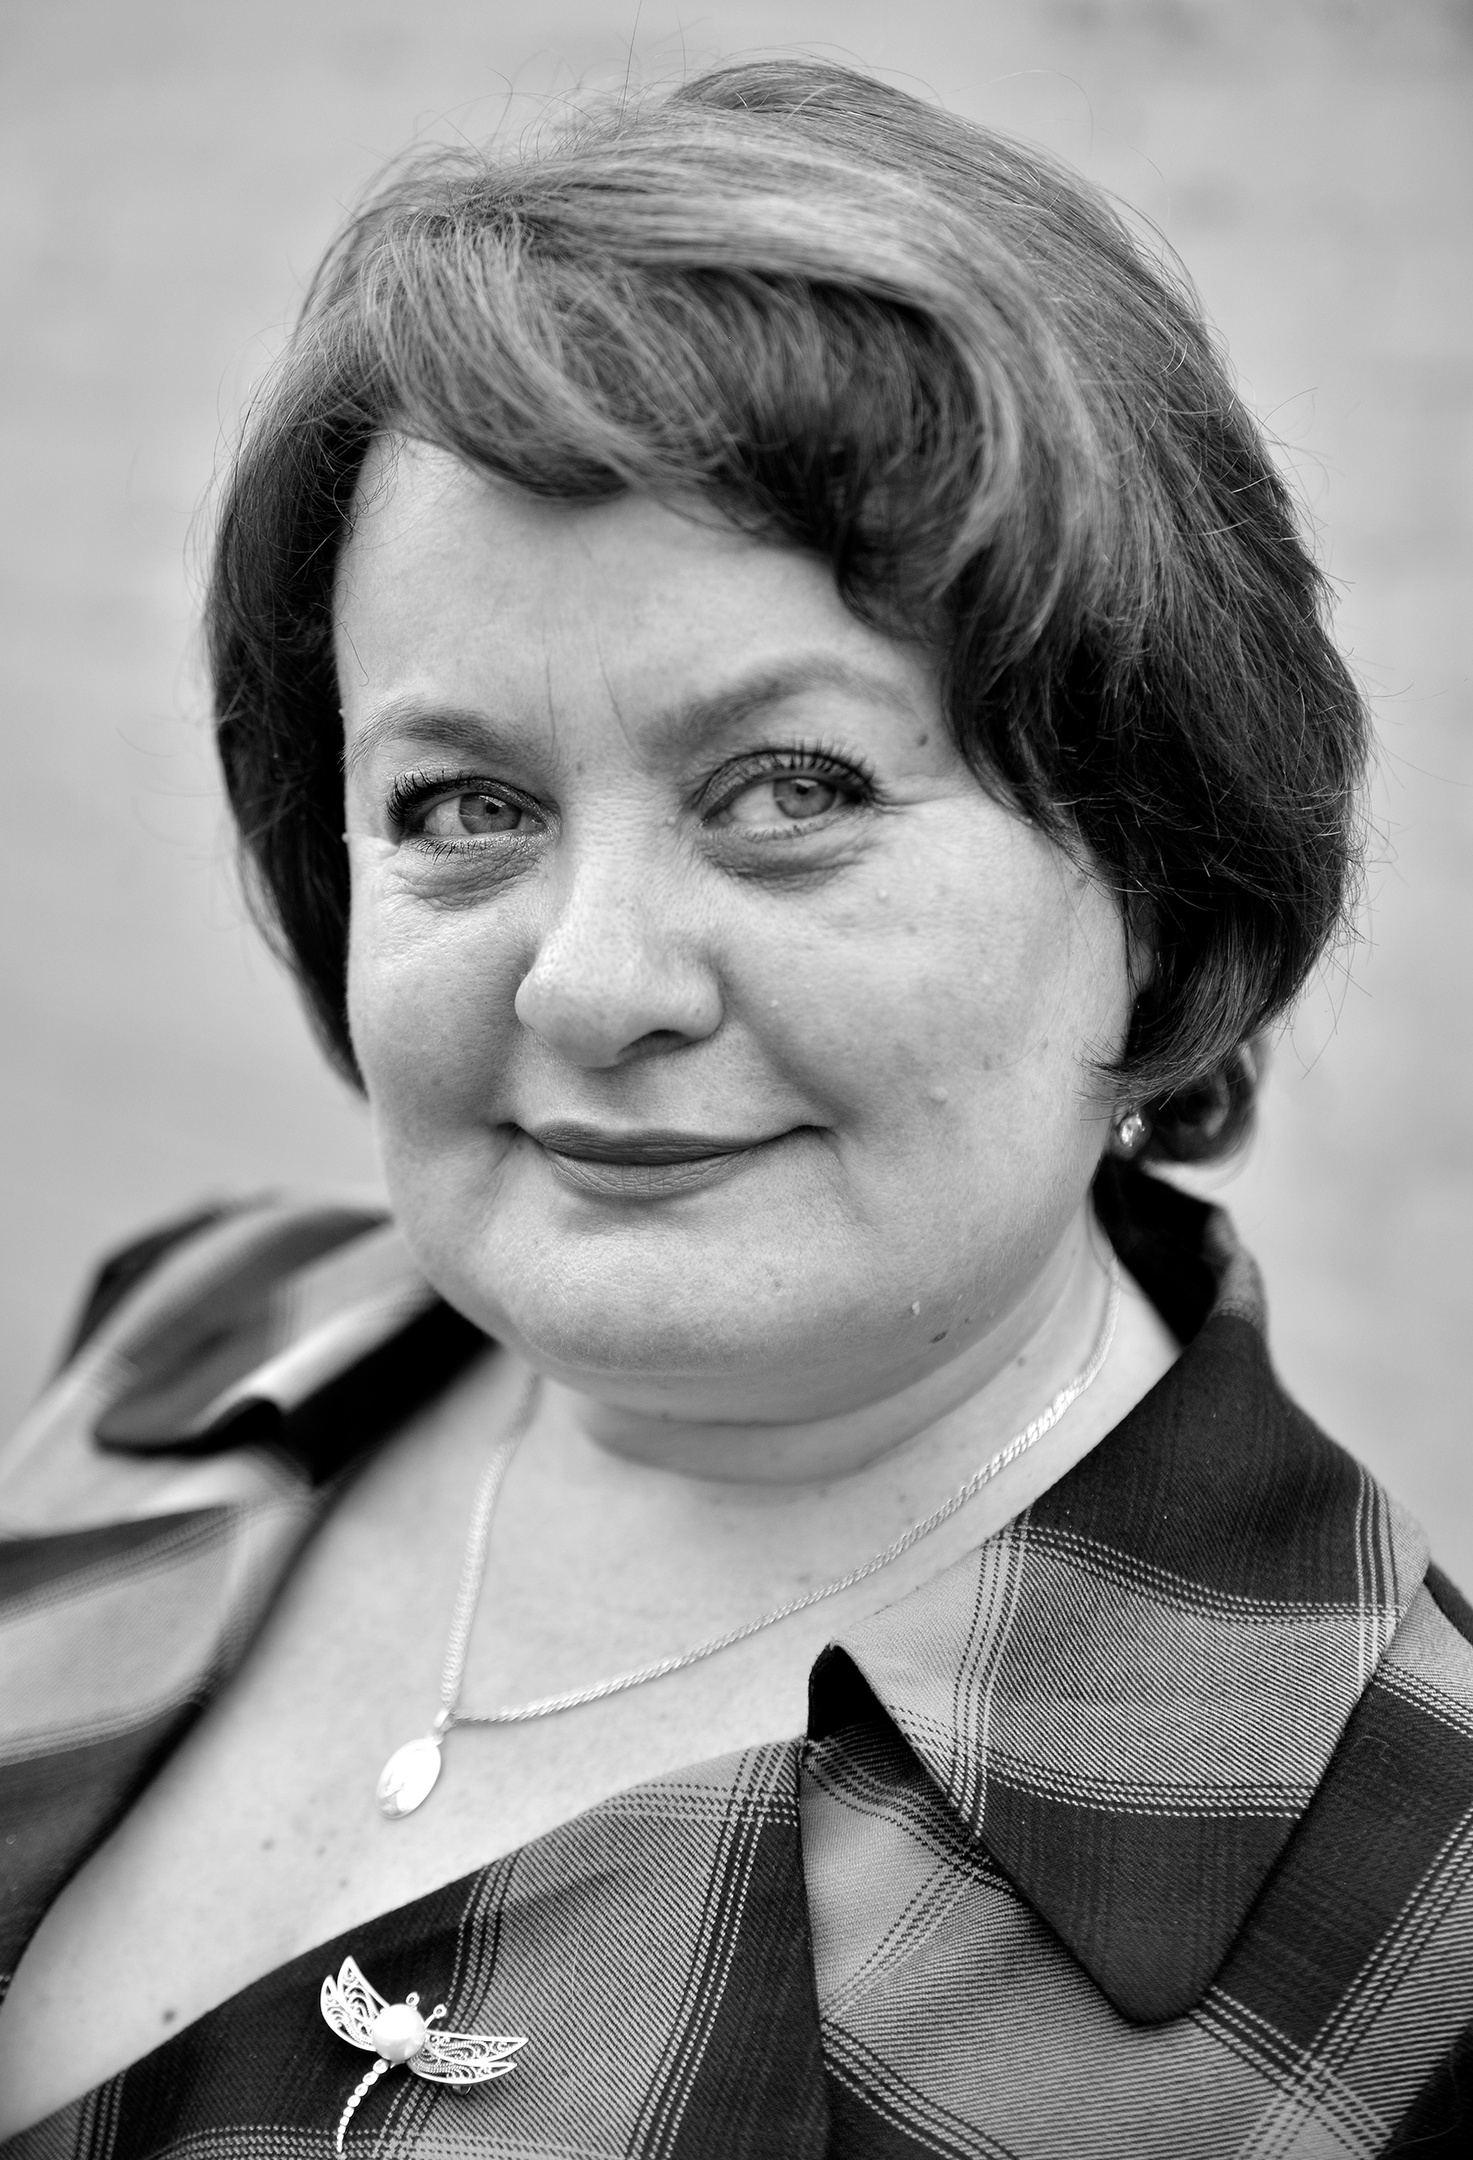 Людмила Александровна Борисова